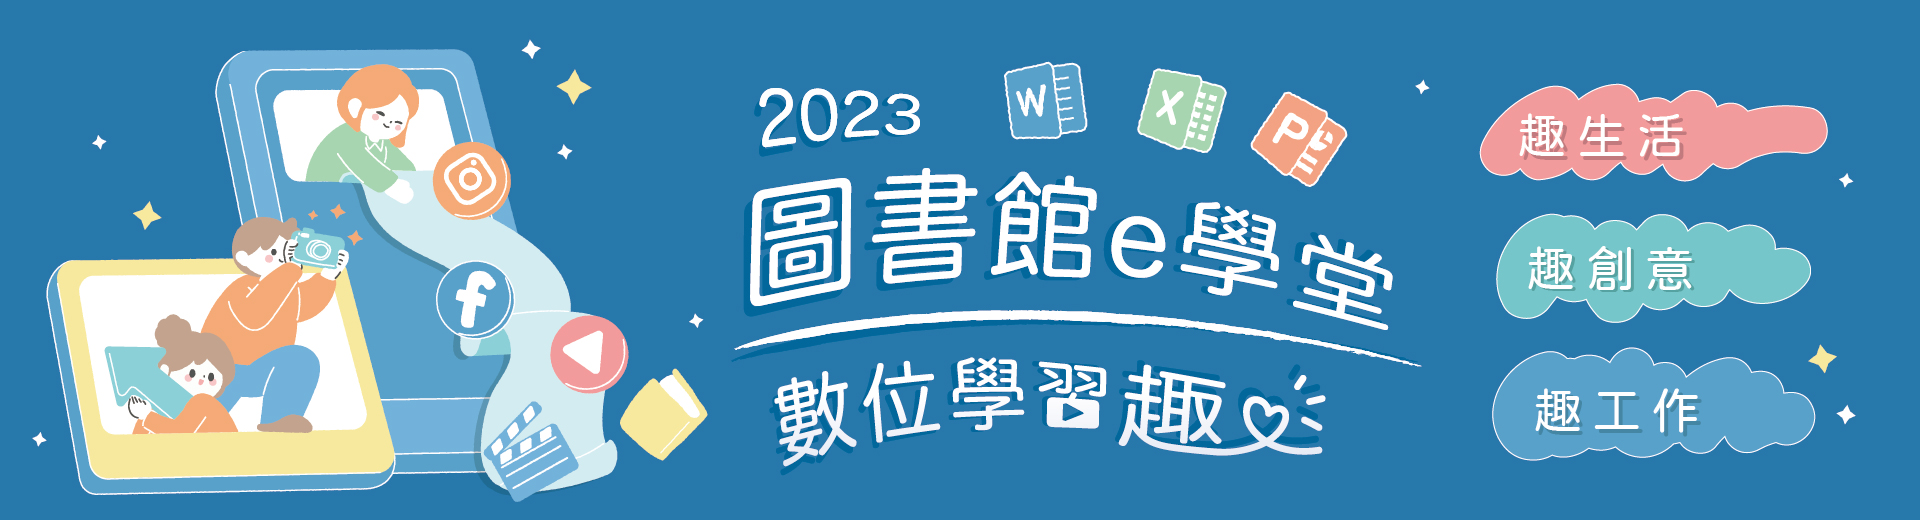 2023活動e學堂